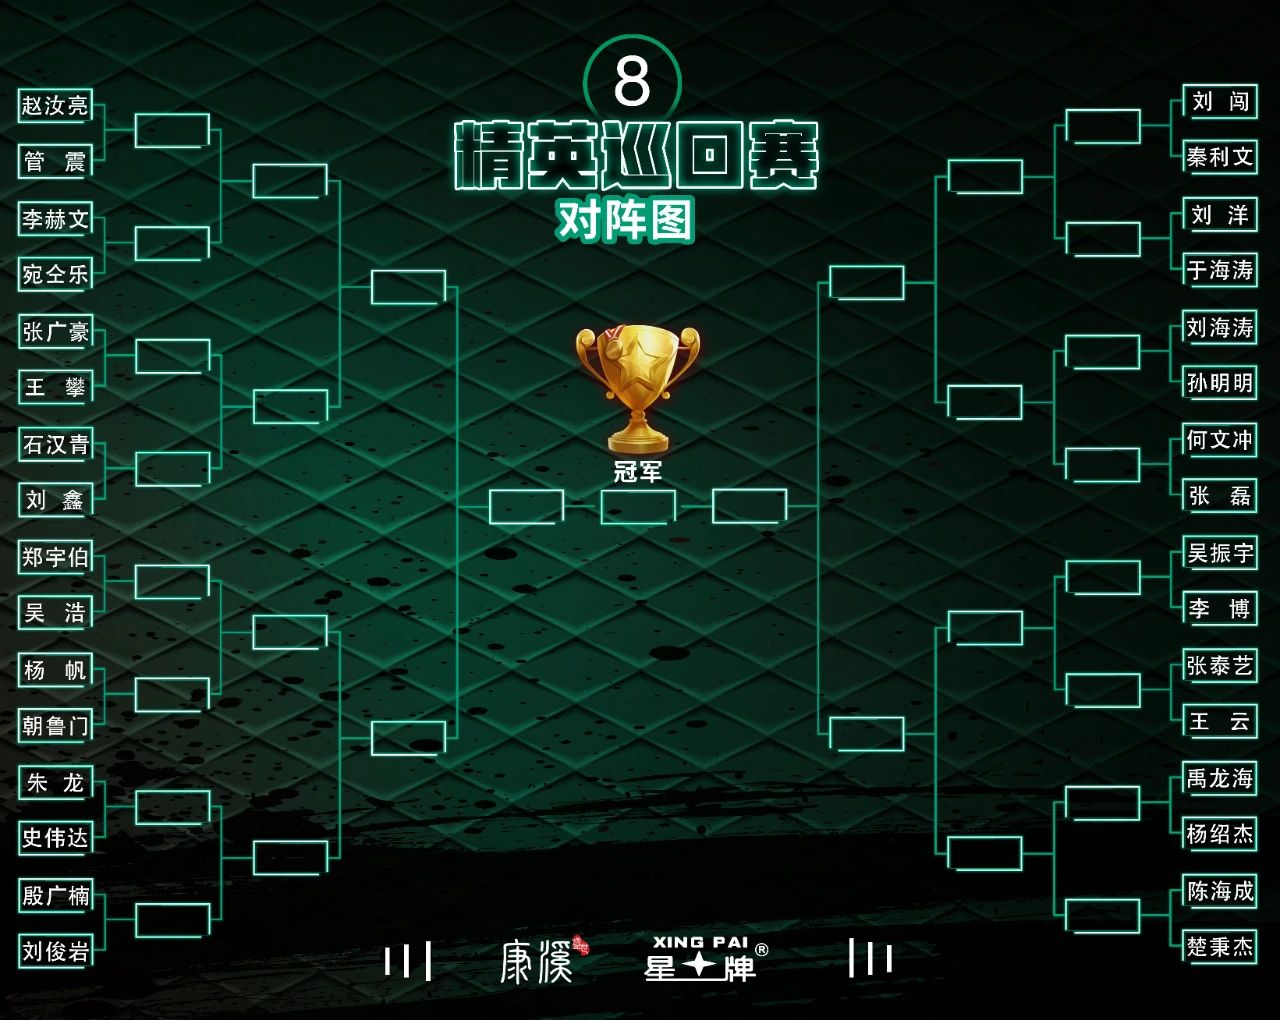 中式台球精英巡回赛第二站即将揭幕 星牌继续助力赛事